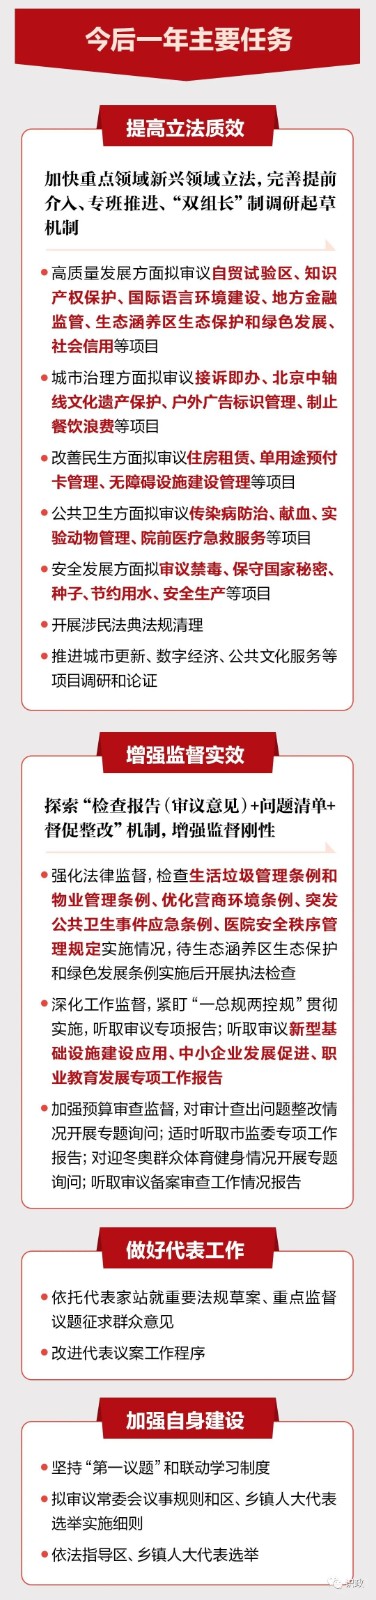 北京自贸试验区、住房租赁等重要法规提上日程-中国网地产